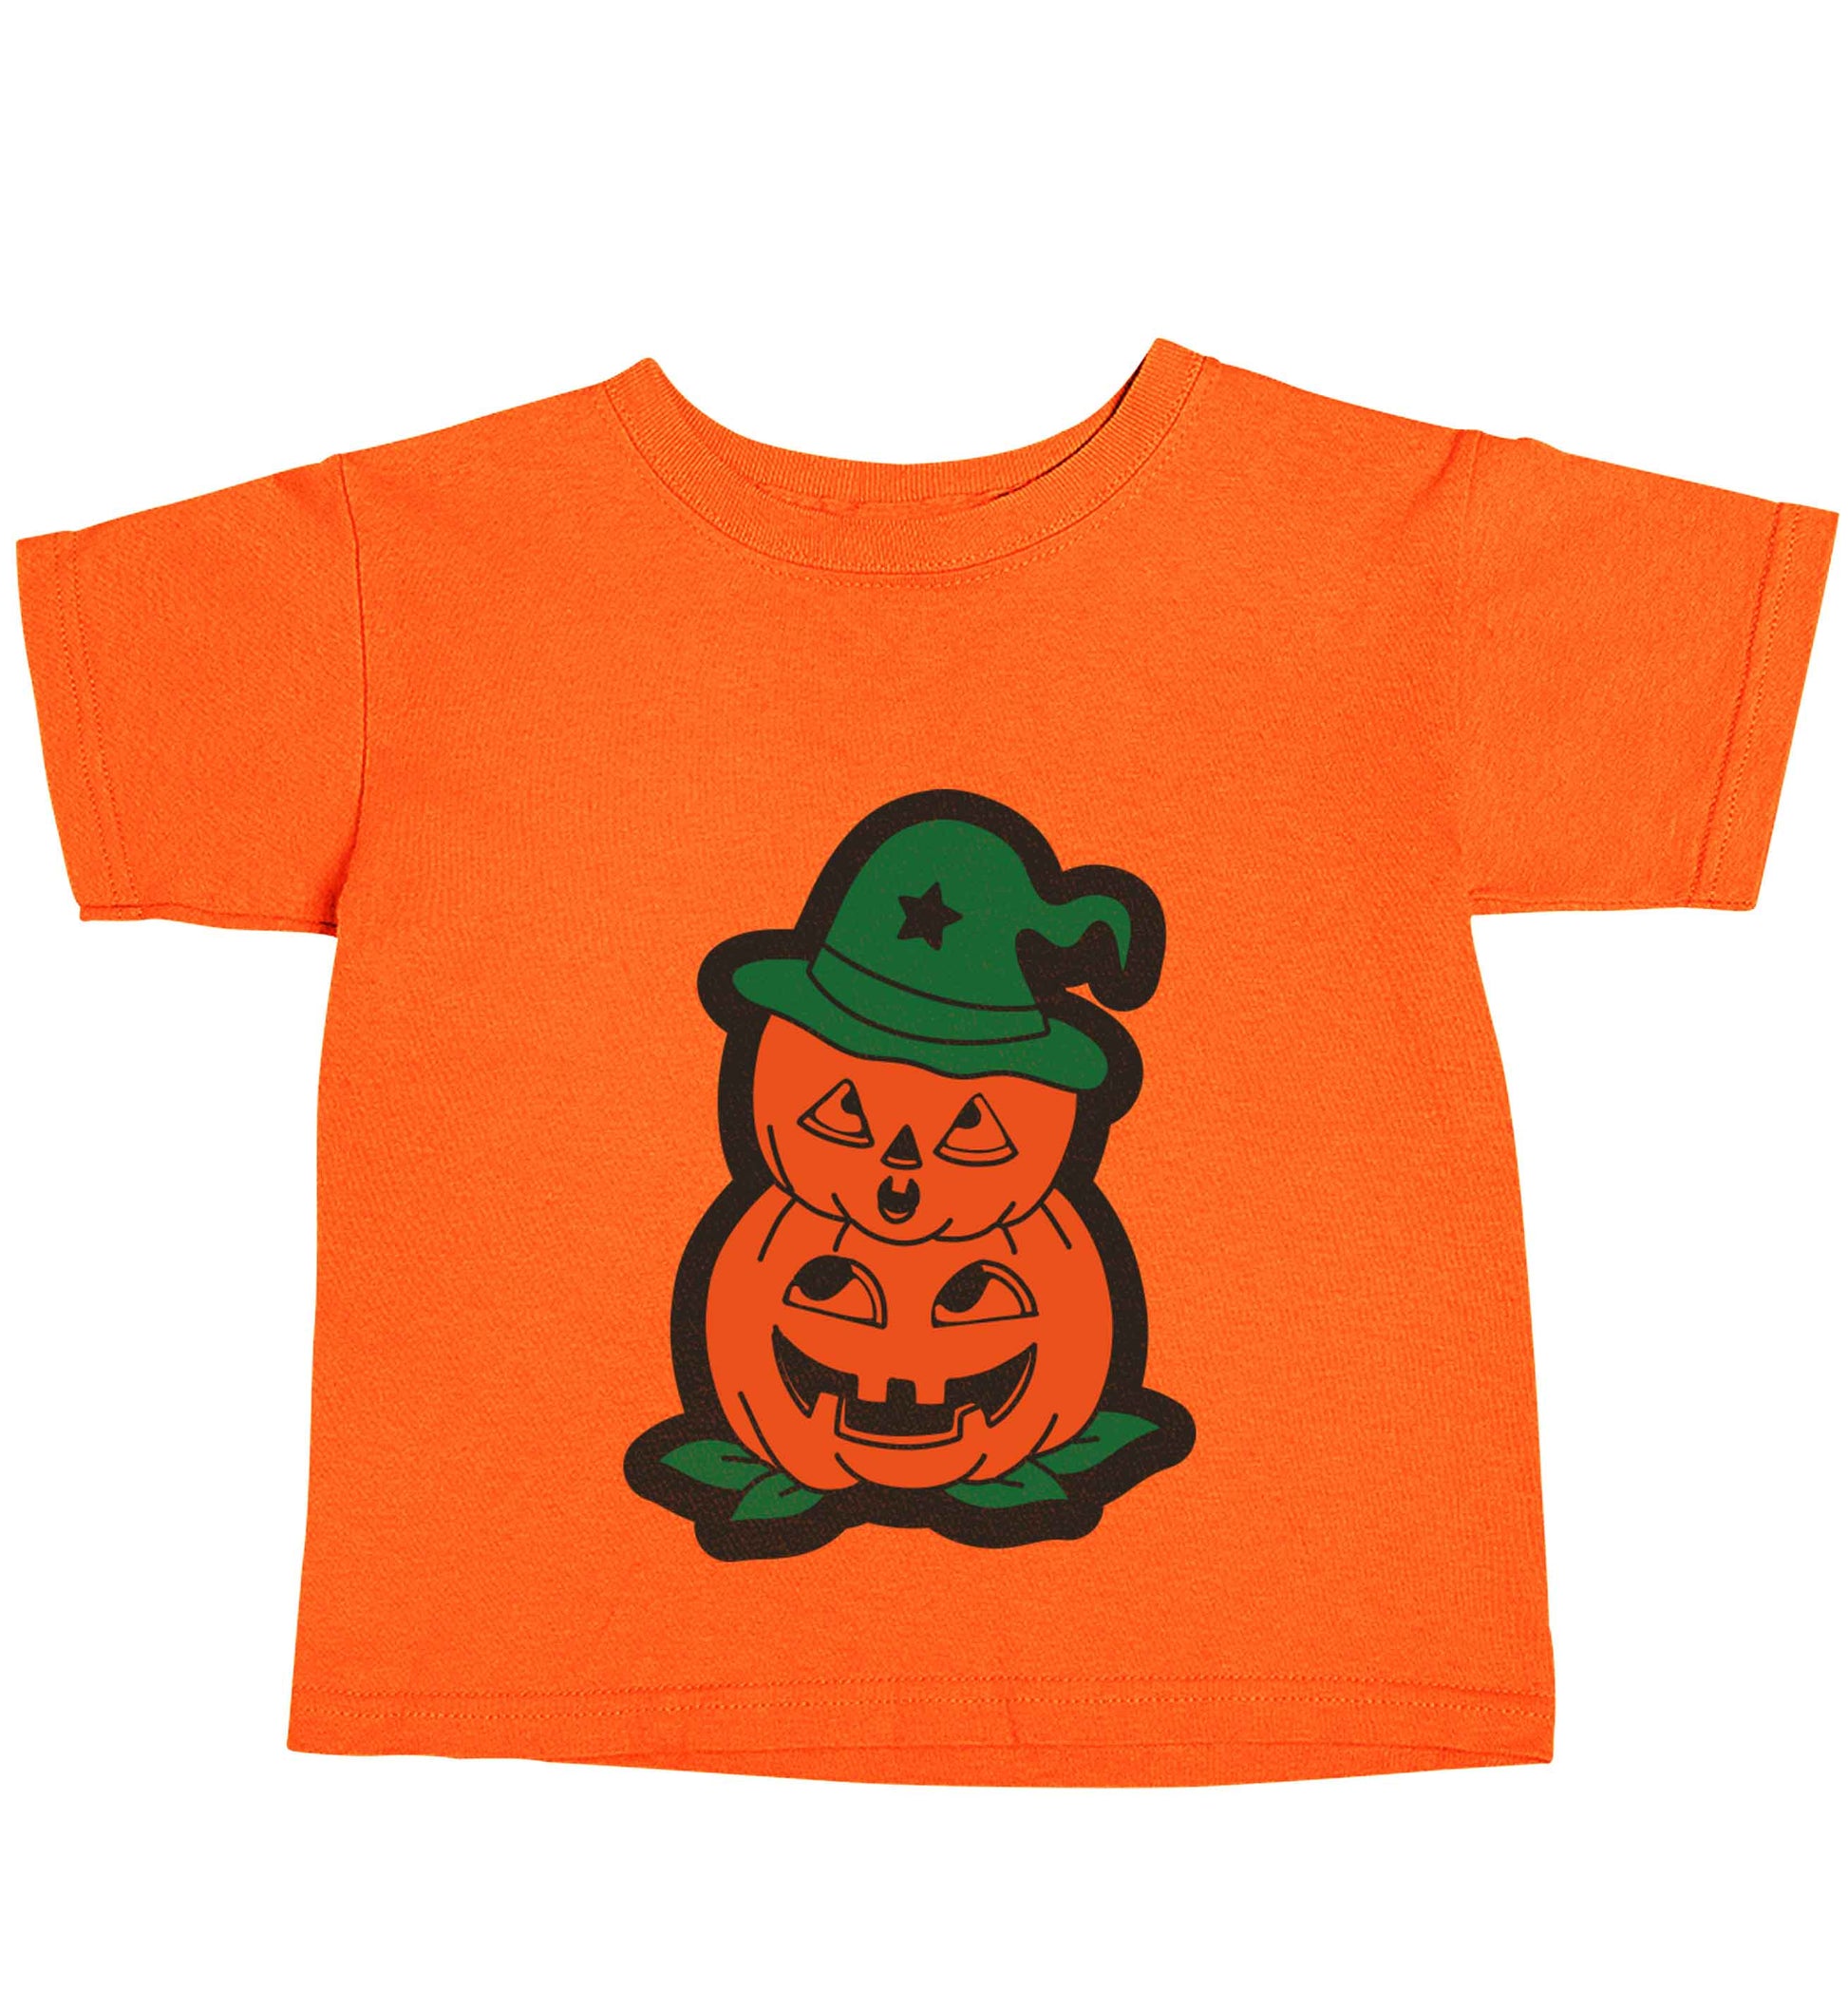 Pumpkin stack Kit orange baby toddler Tshirt 2 Years